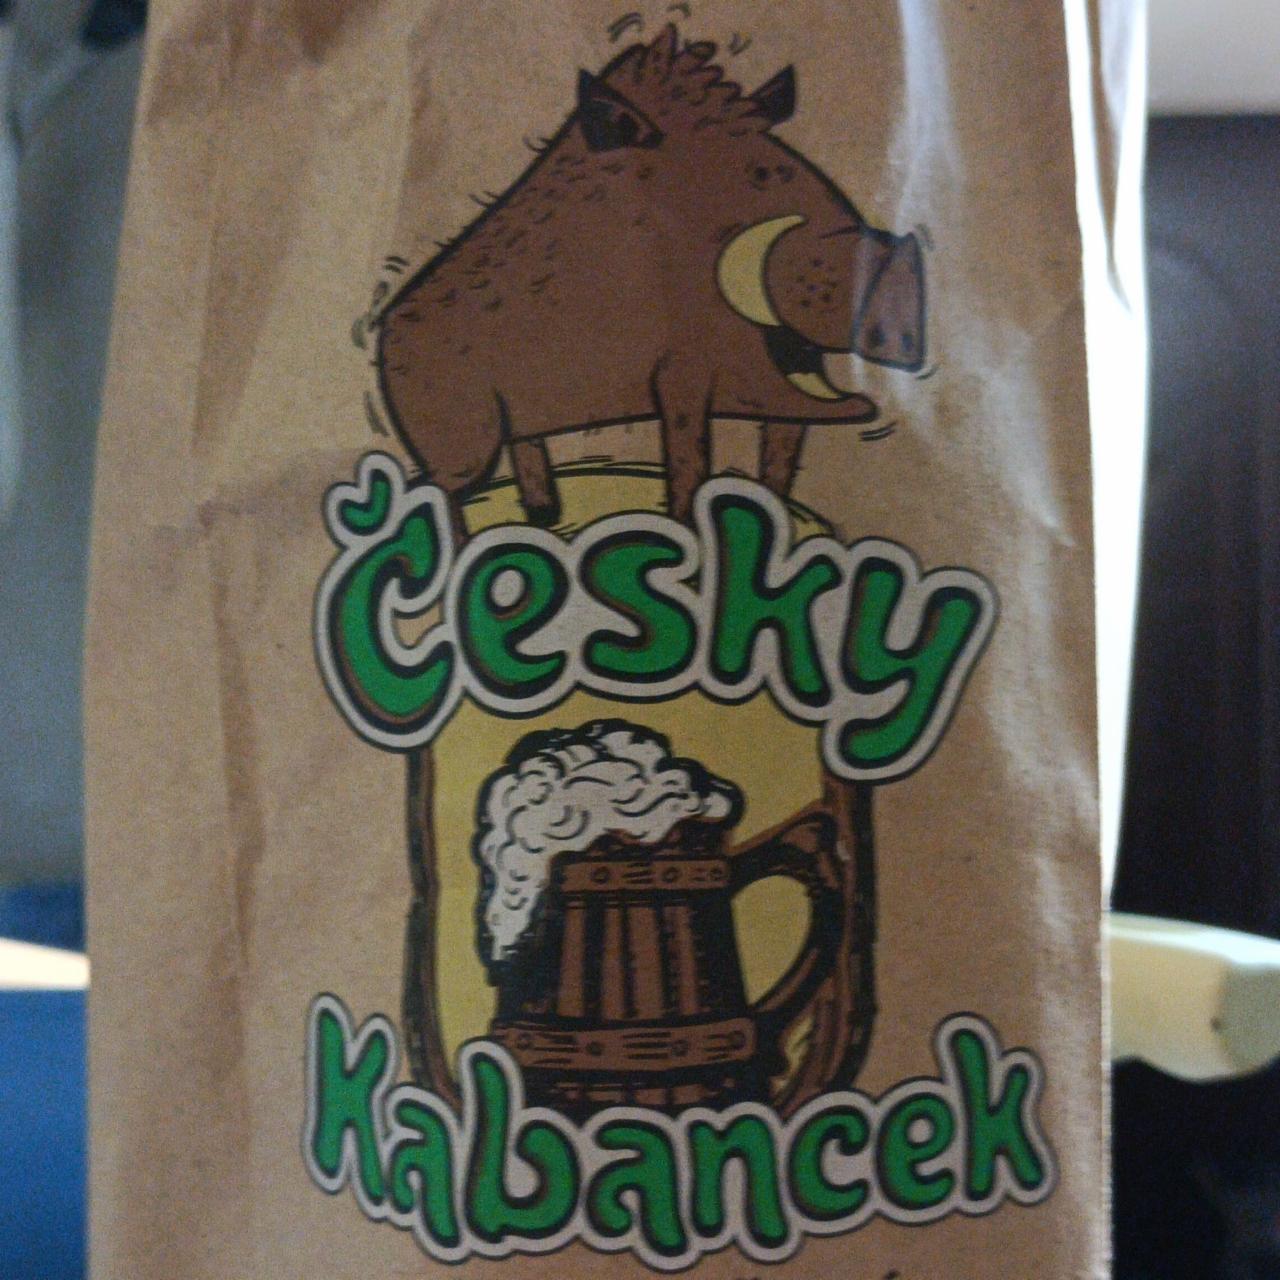 Фото - напиток пивной пшеничный нефильтрованный неосветлённый Cesky kabancek